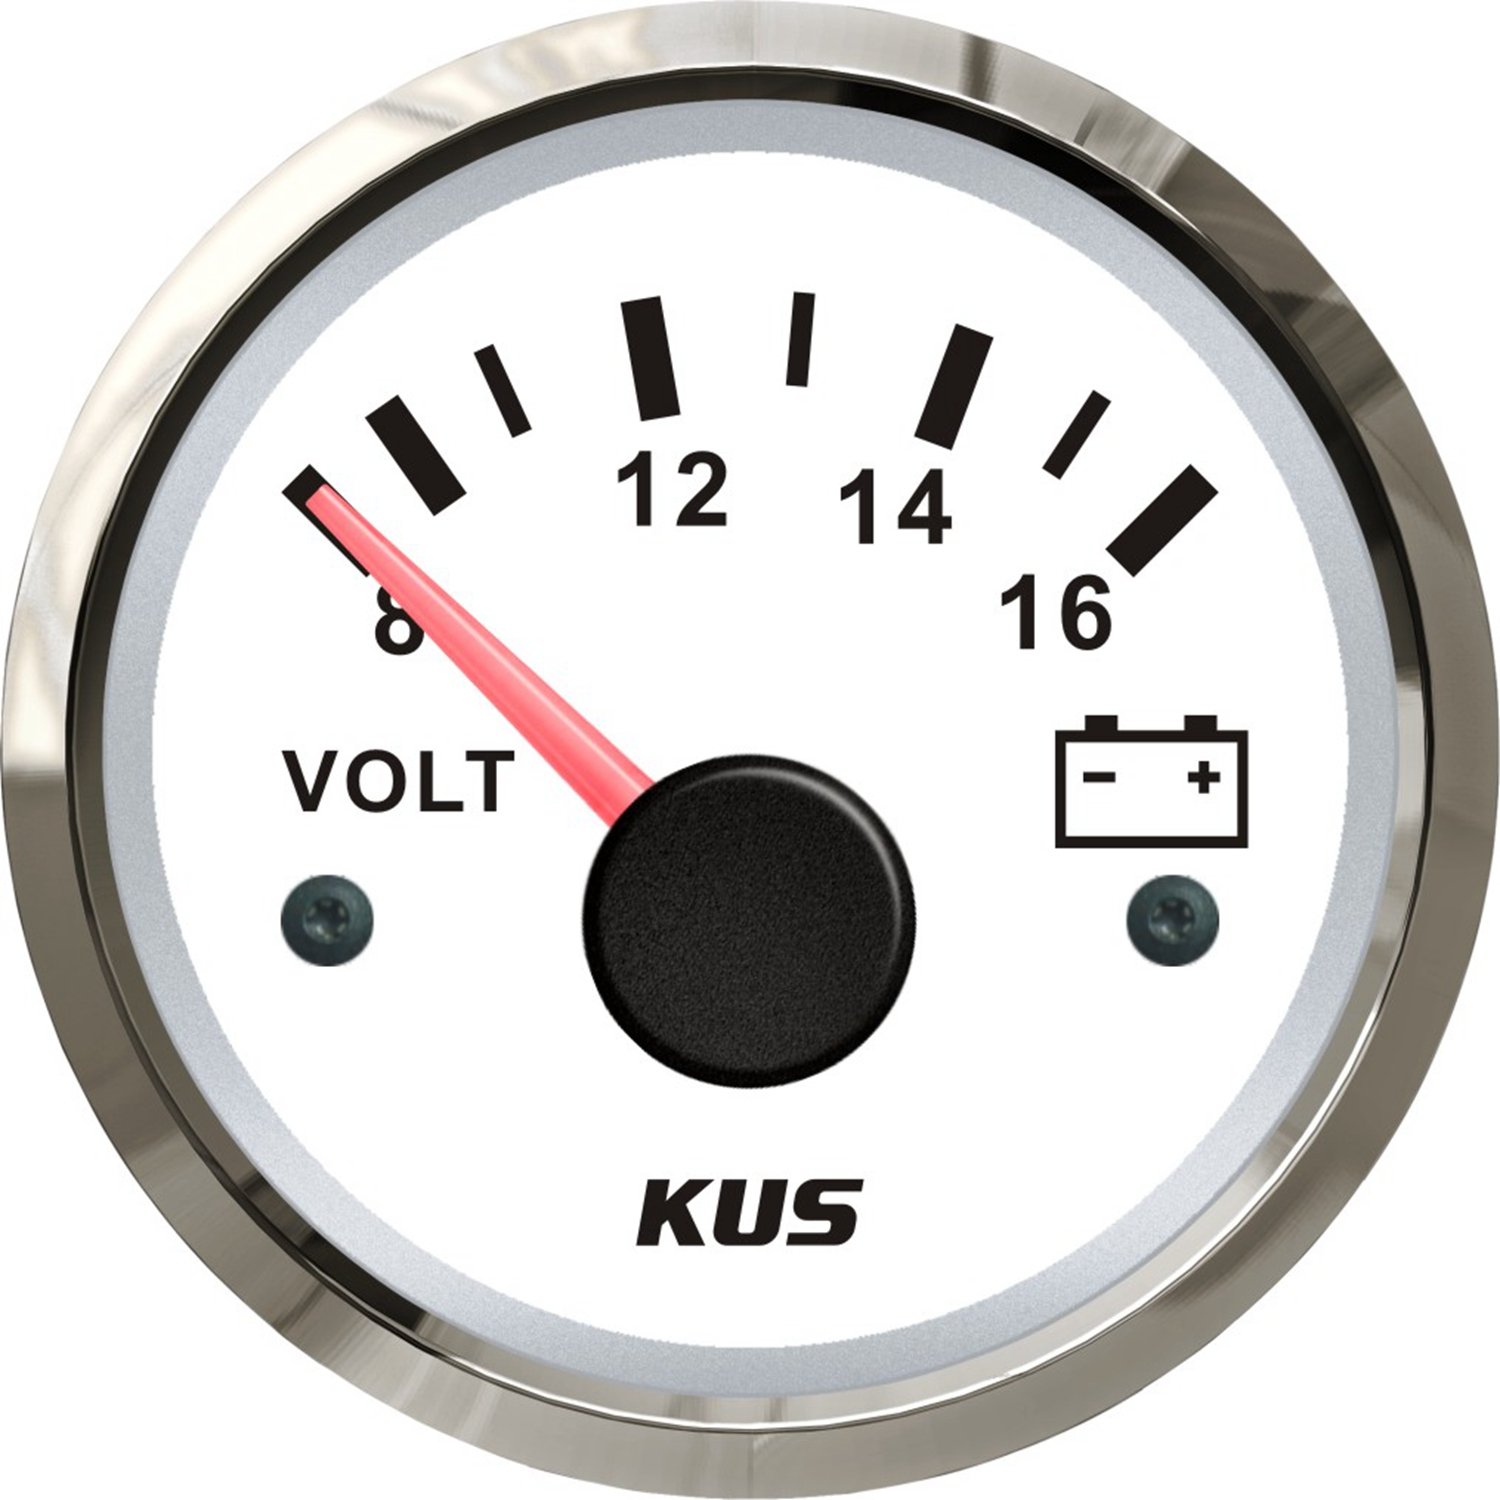 KUS1008: KUS Voltmeter, weisses Display mit Edelstahl-Lünette